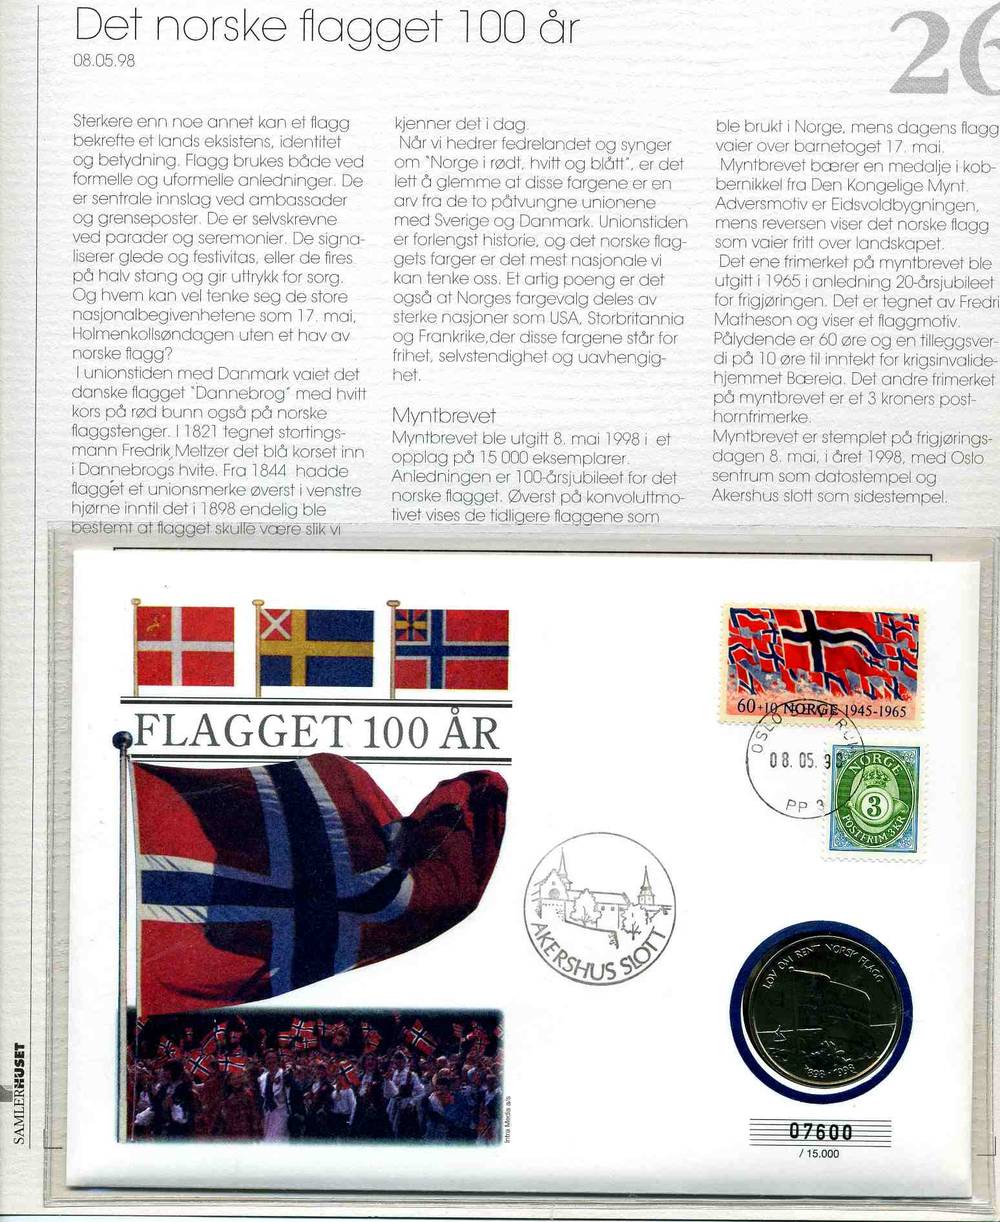 Det norske flagget 100 år 1998